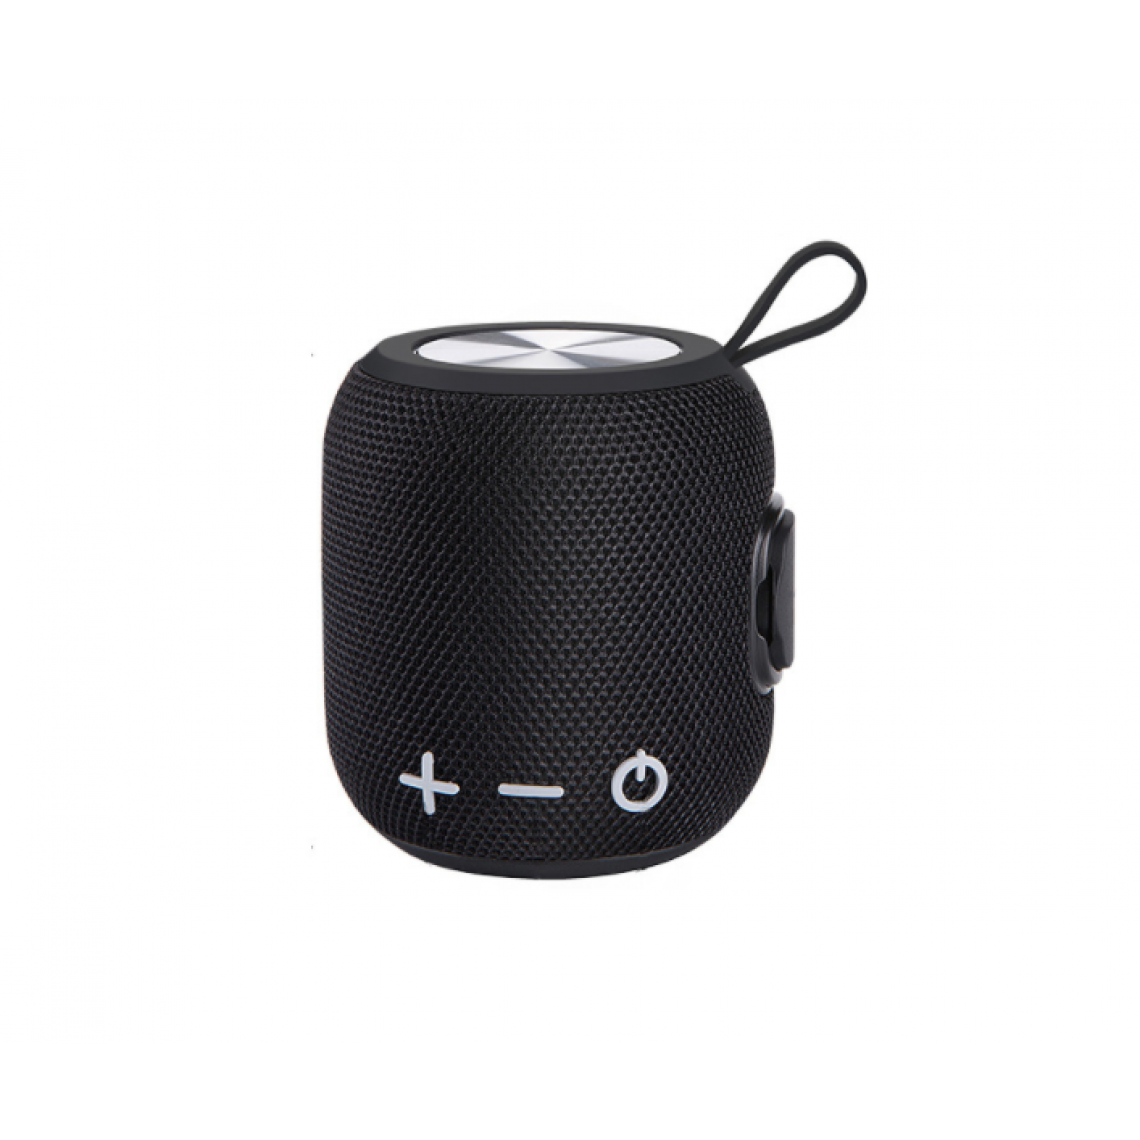 Universal - Mini haut-parleur Bluetooth portable noir haut-parleur de basse sans fil bruyant extérieur 360 degrés HD son surround riche basse stéréo pour les utilisateurs à la maison haut-parleurs extérieurs - Hauts-parleurs